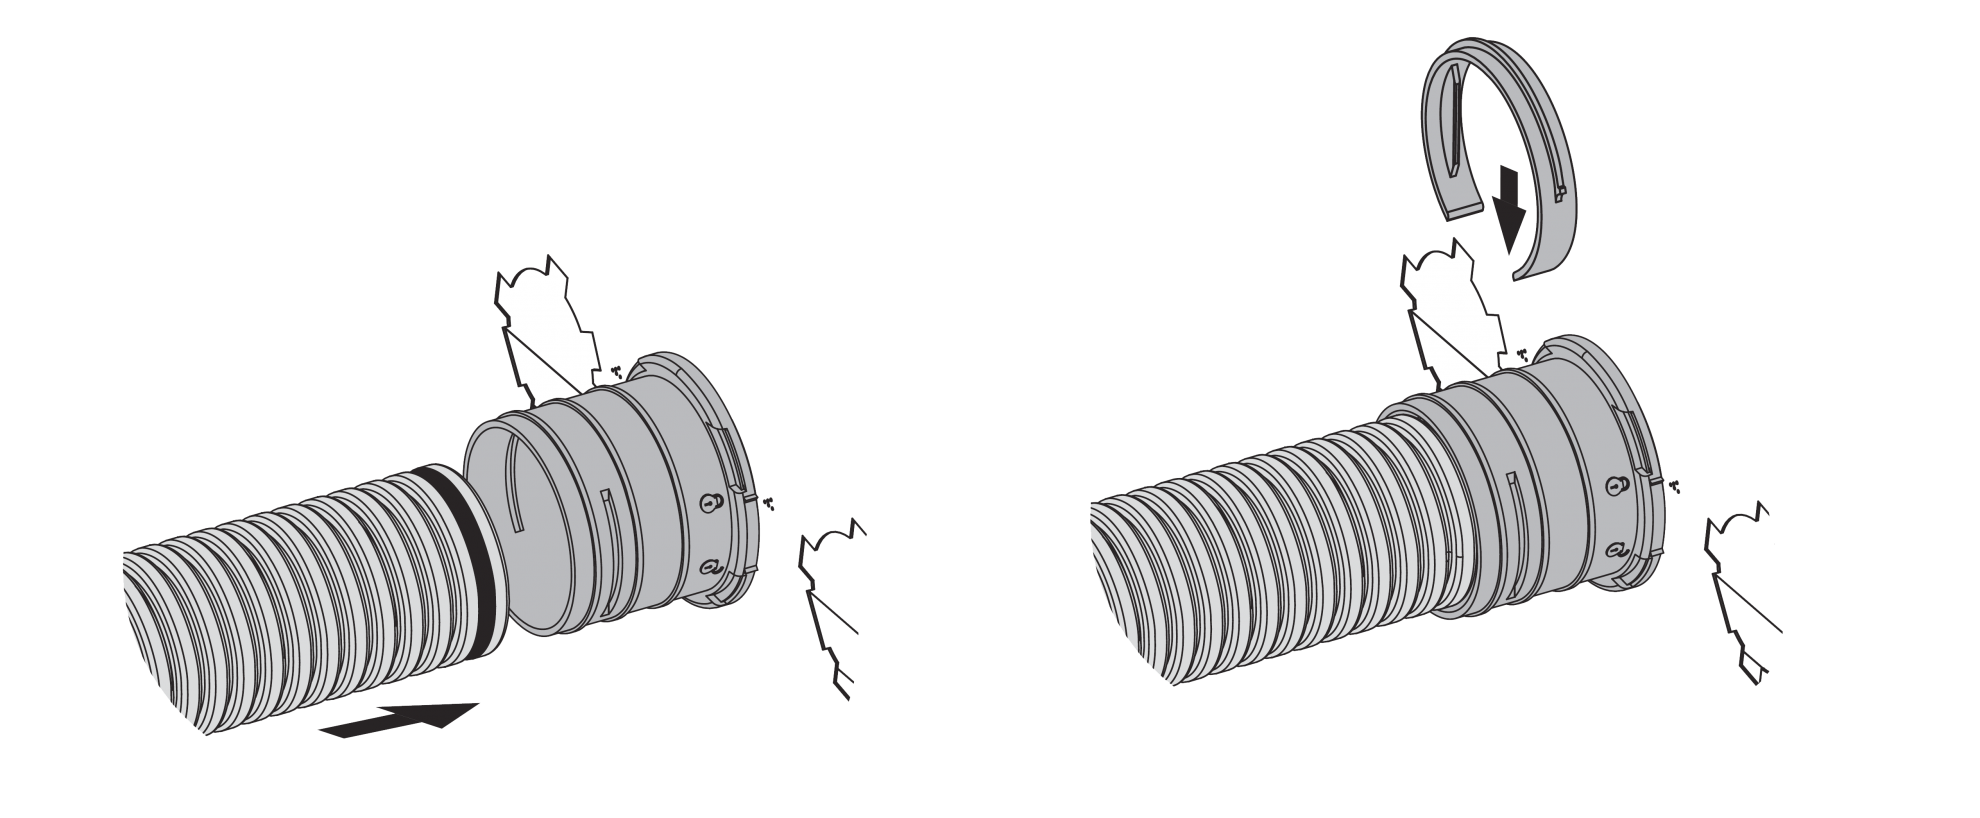 PIerścień zabezpieczający wykorzystuje się również przy łączeniu elastycznych kanałów systemu Dalap Flexitech z pozostałymi komponentami, takimi jak skrzynki rozdzielające czy adaptery do rozdzielania systemu wentylacyjnego